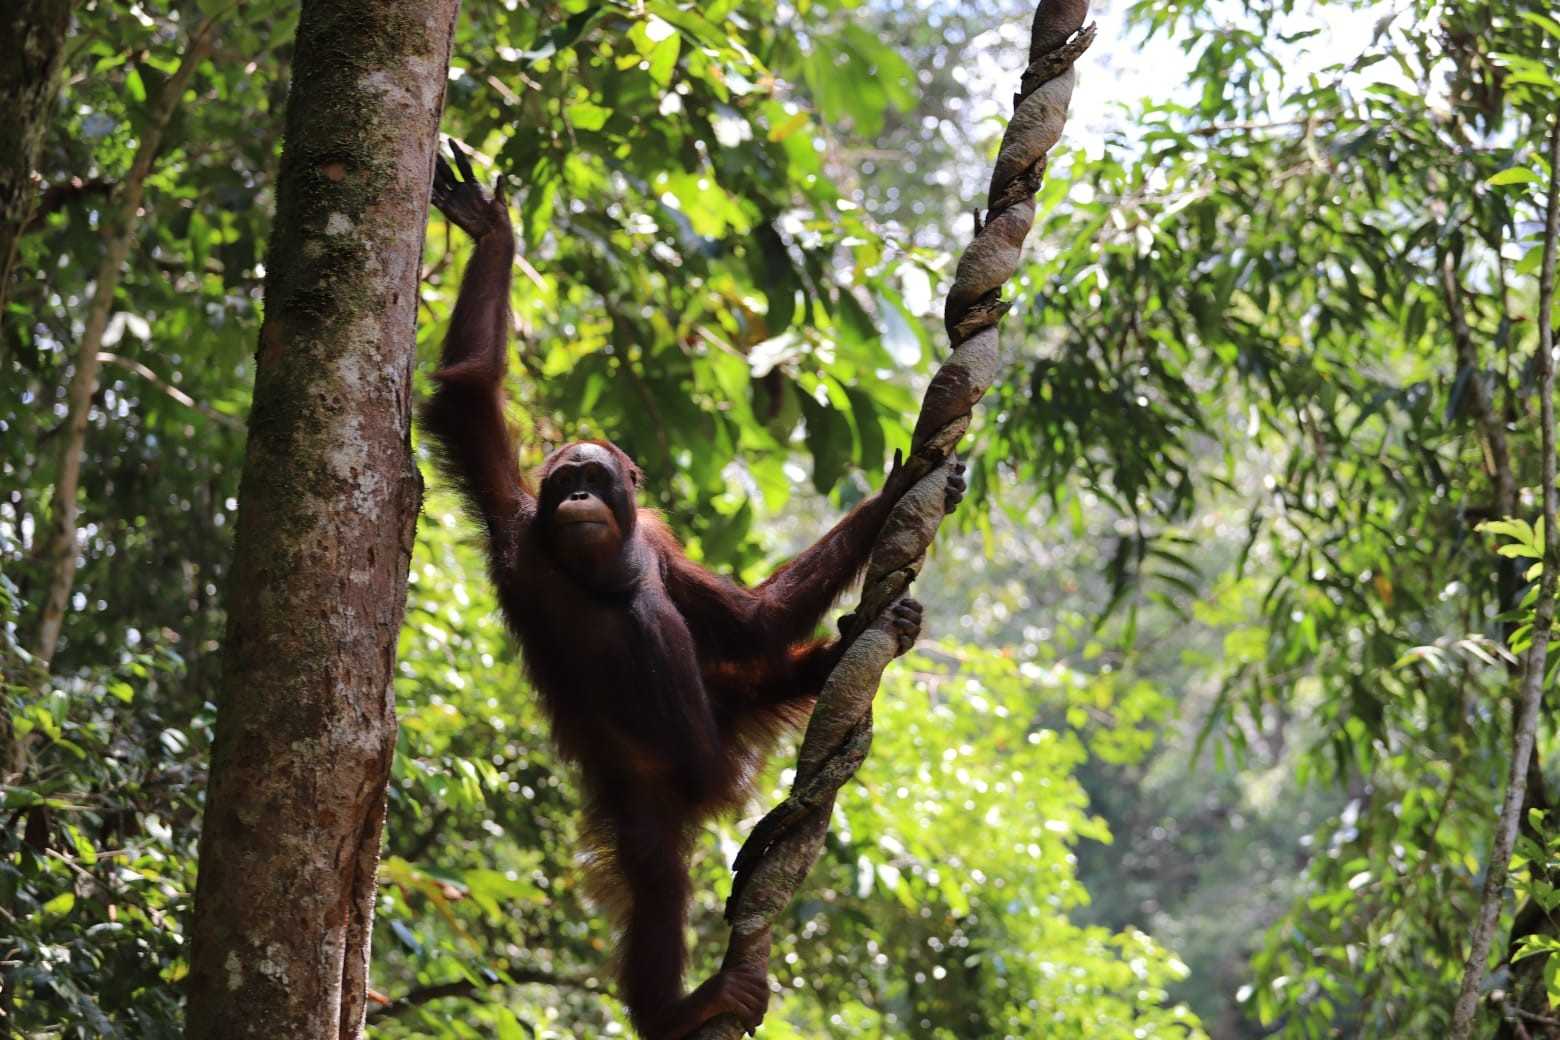 Salah seekor orangutan kalimantan (Pongo pygmaeus) yang dilepasliarkan di Taman Nasional Betung Kerihun dan Danau Sentarum (TNBKDS), Kalimantan Barat, Jumat (26/1/2024). | Foto: PPID KLHK